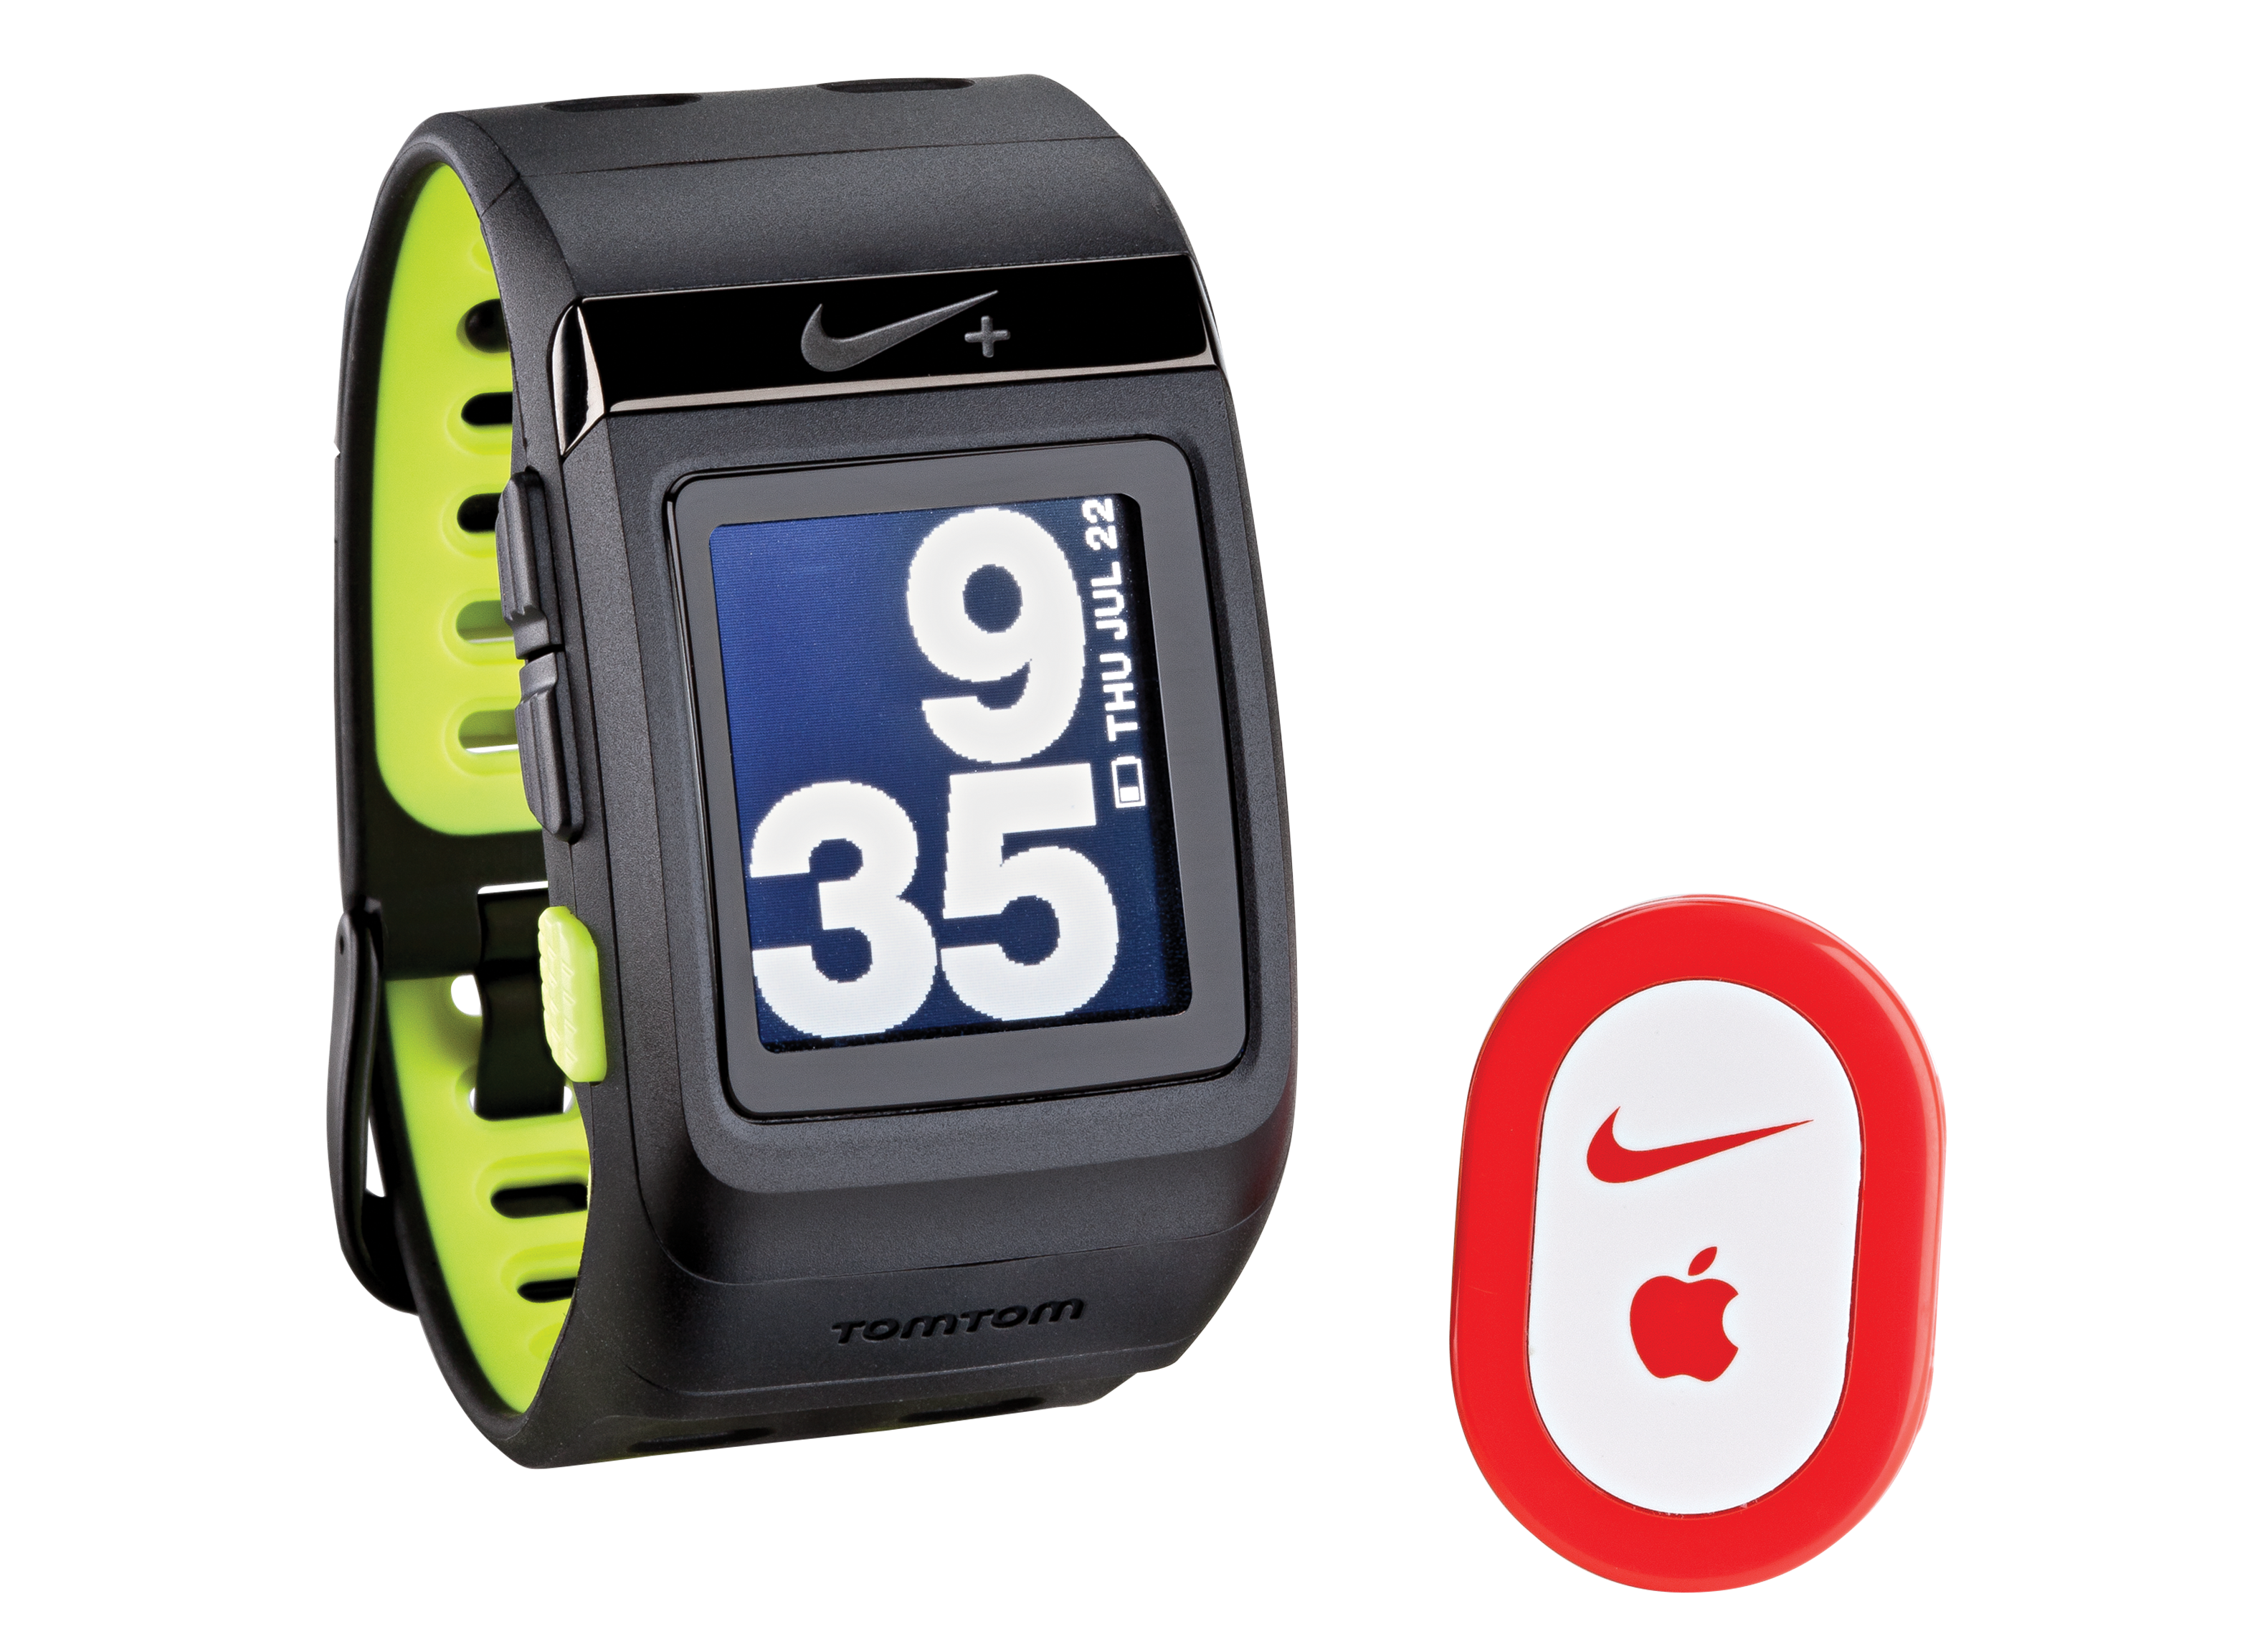 Шагомер на apple watch. Nike GPS. Часы Nike. Спортивные часы Nike. North sportwatch n-6019 товары.